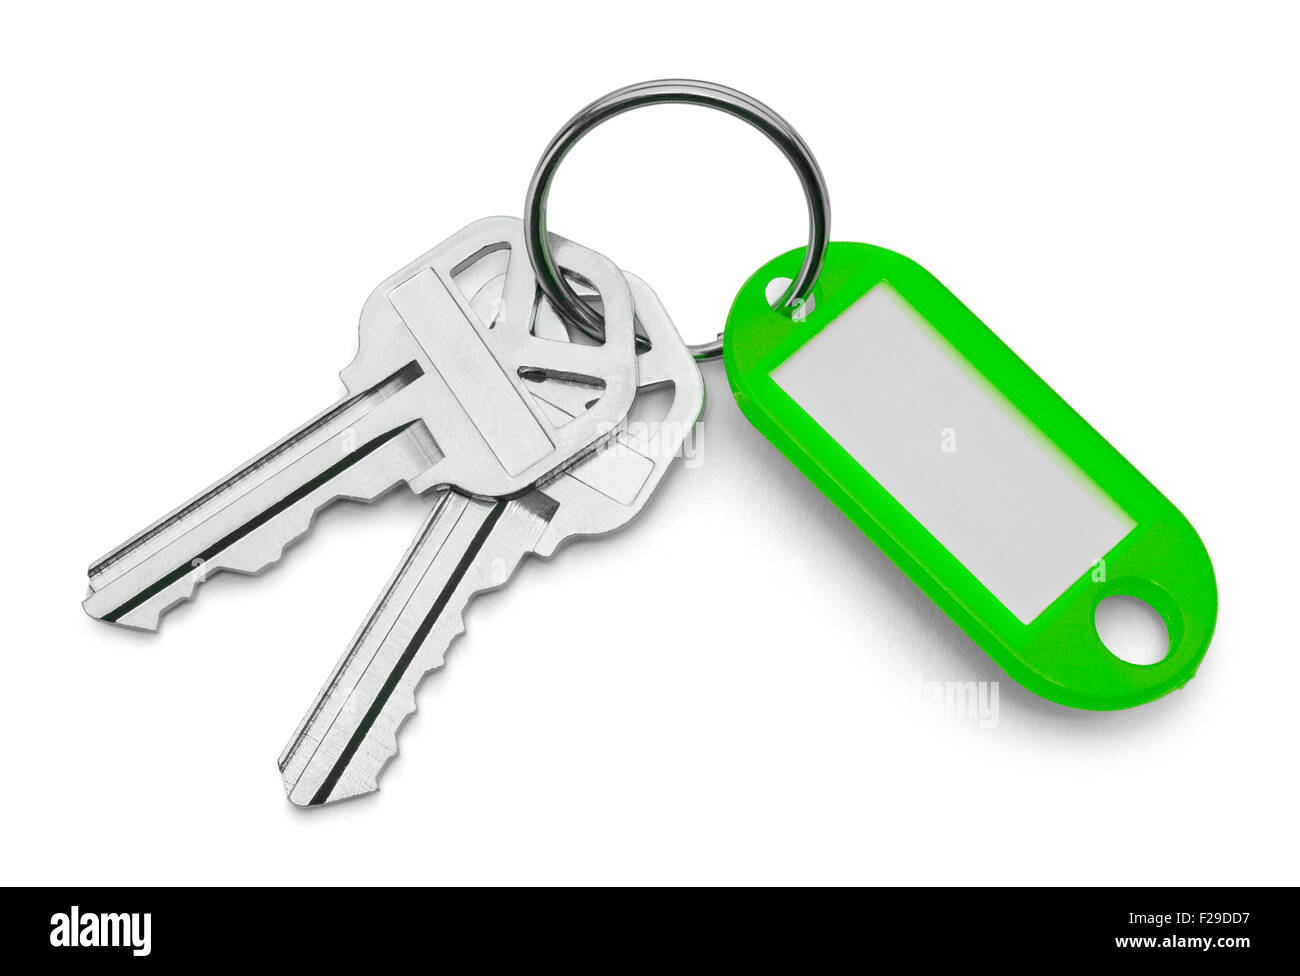 Grüne Schlüsselanhänger Tag und Schlüssel, Isolated on White Background. Stockfoto